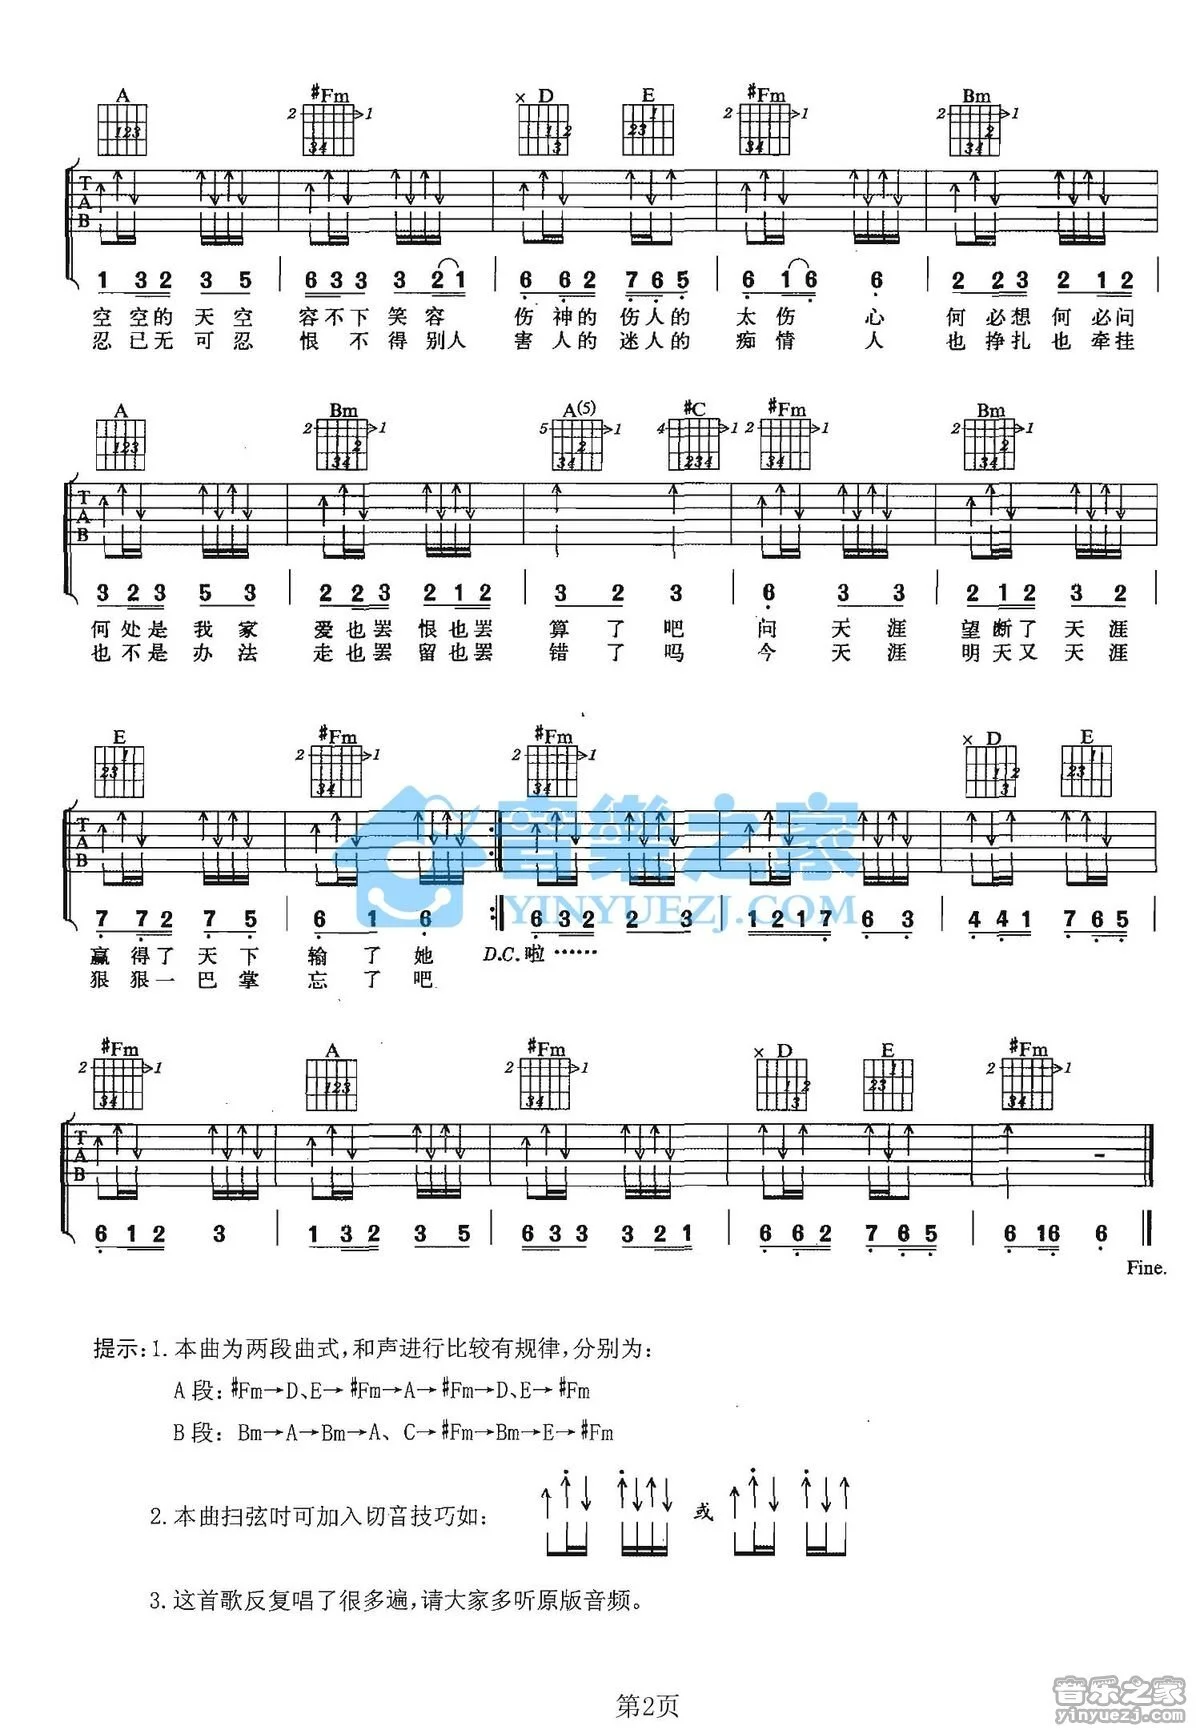 天涯钢琴谱-任贤齐-简谱网